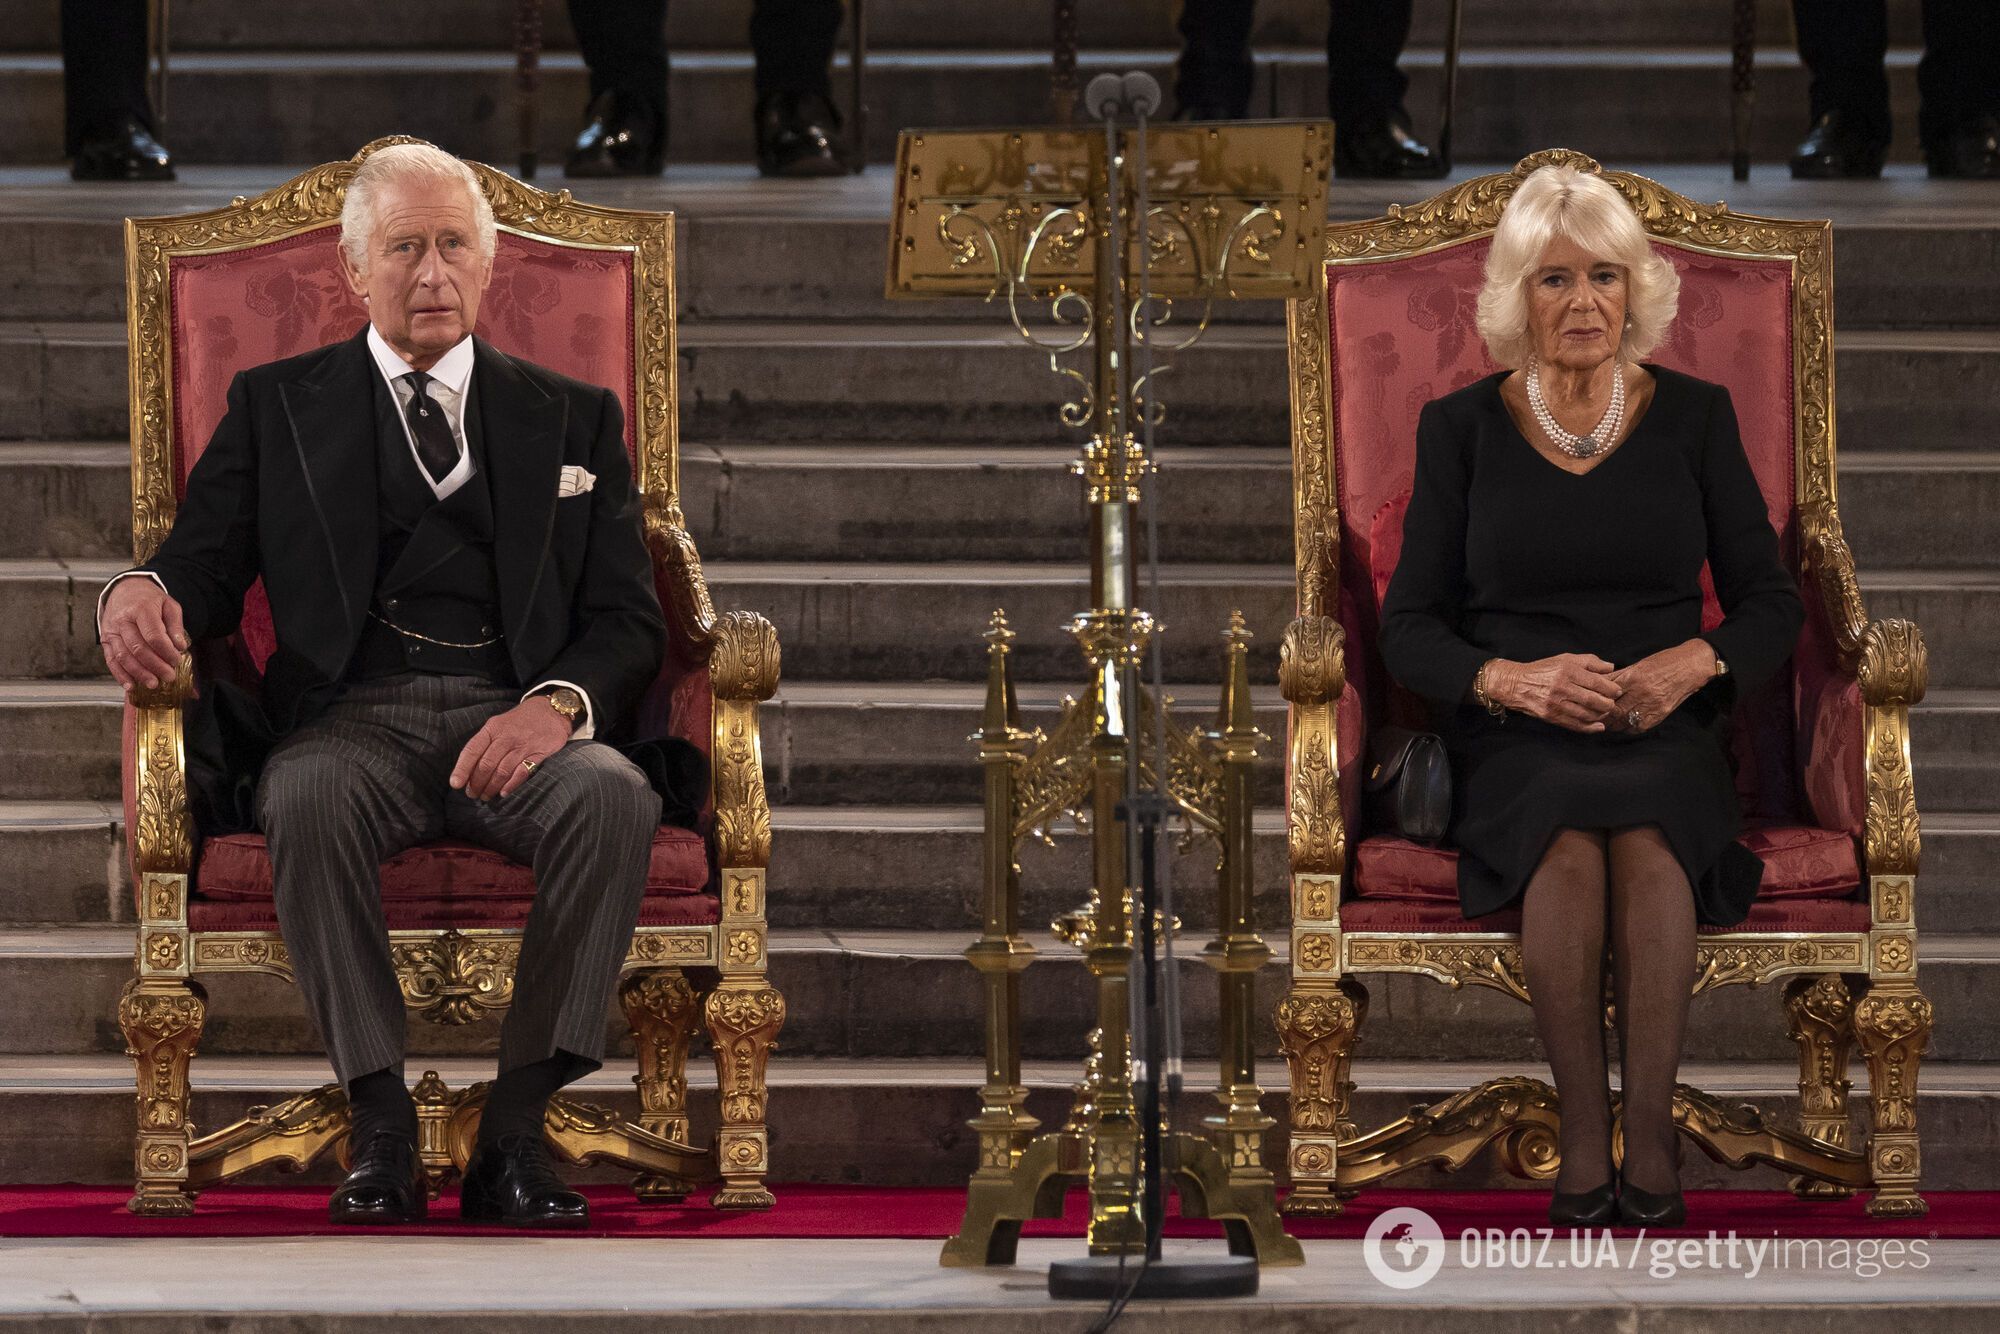 Финал сериала "Корона" предсказал будущее монархии? Какие скандалы королевской семьи могут привести к ее краху